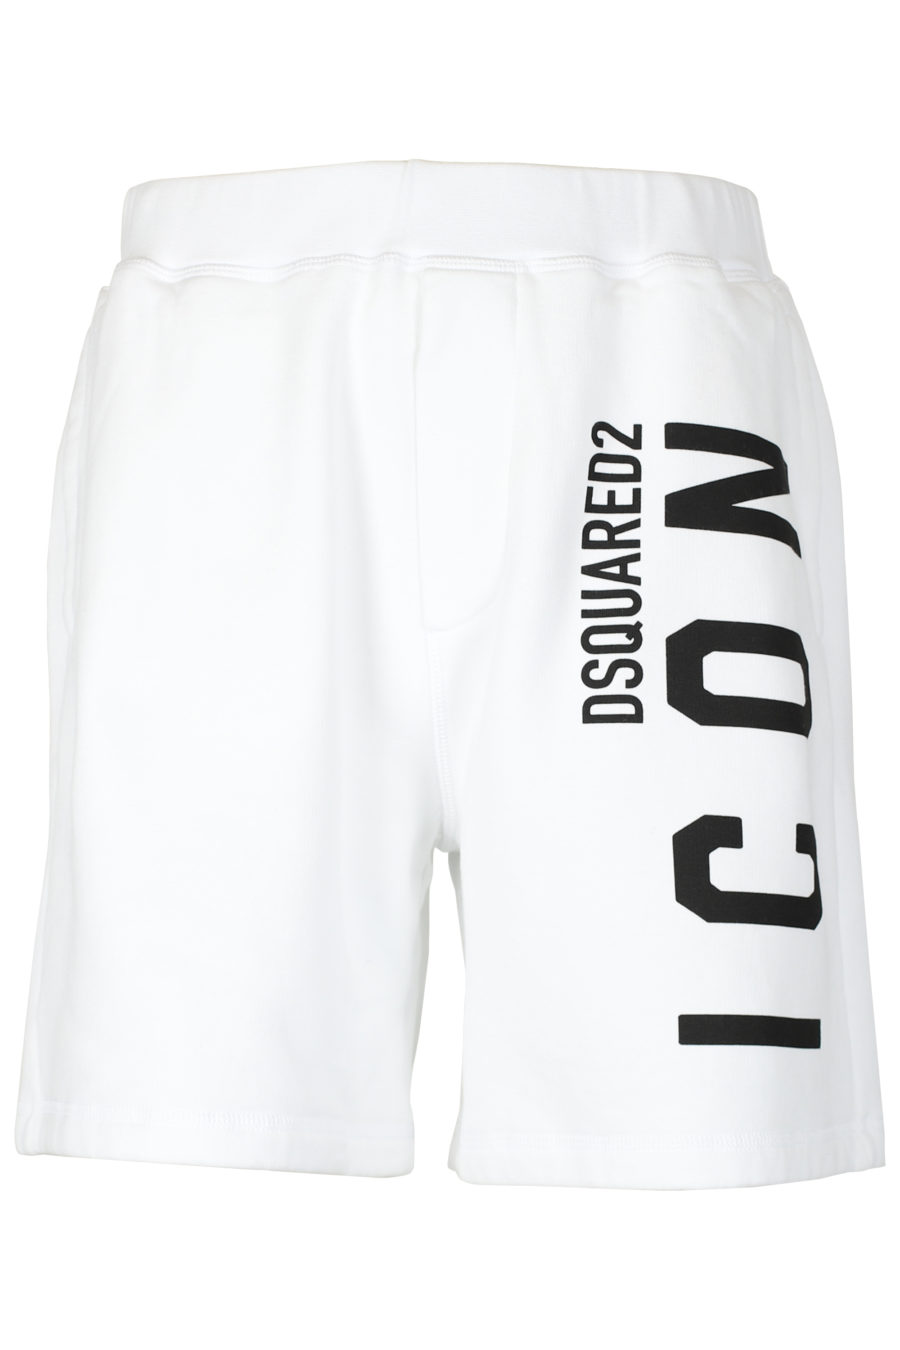 Shorts blancos logo "Icon" vertical - IMG 2609